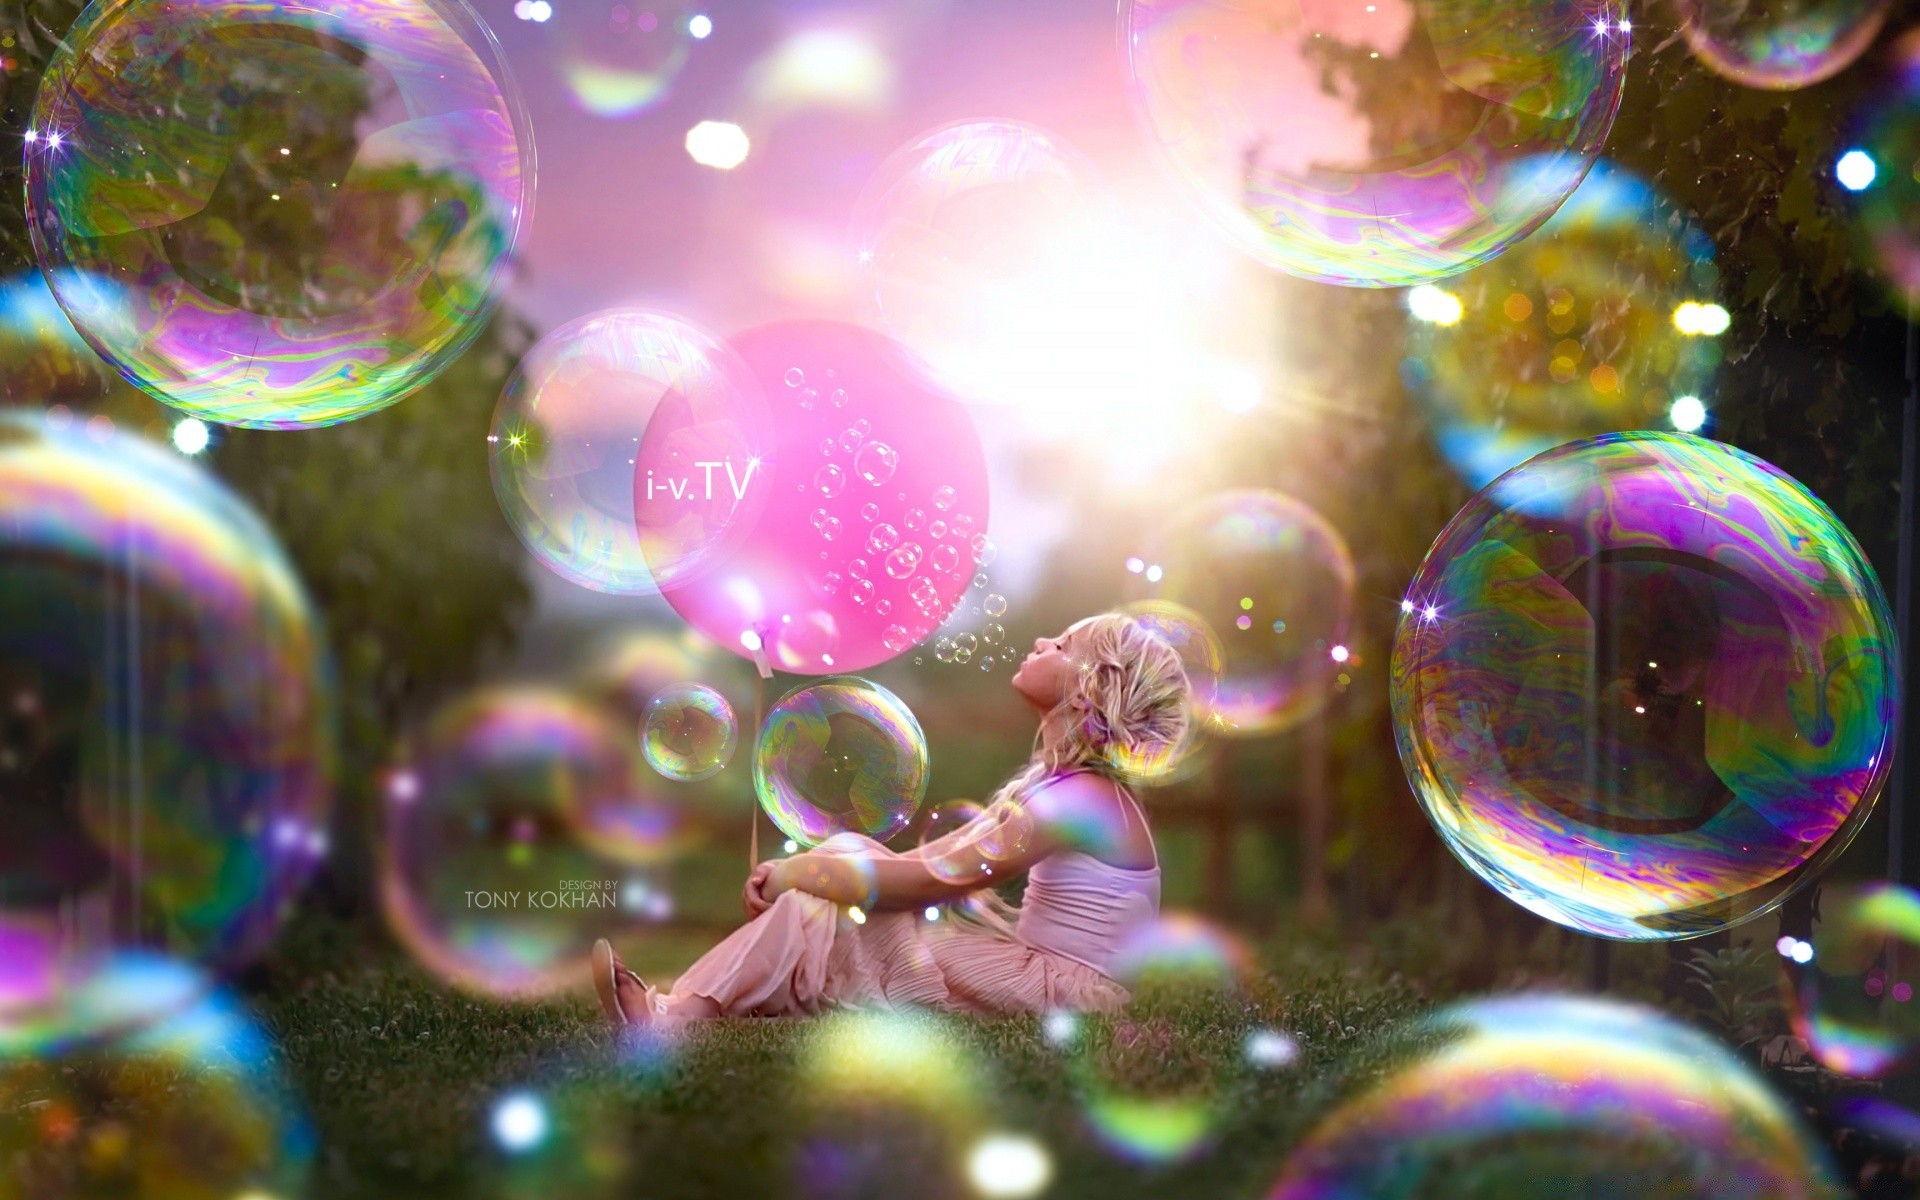 креатив рождество круглый светит украшения аннотация мяч сфера свет рабочего стола праздник яркий цвет пузырь магия размытость дизайн удовольствие участник мерри